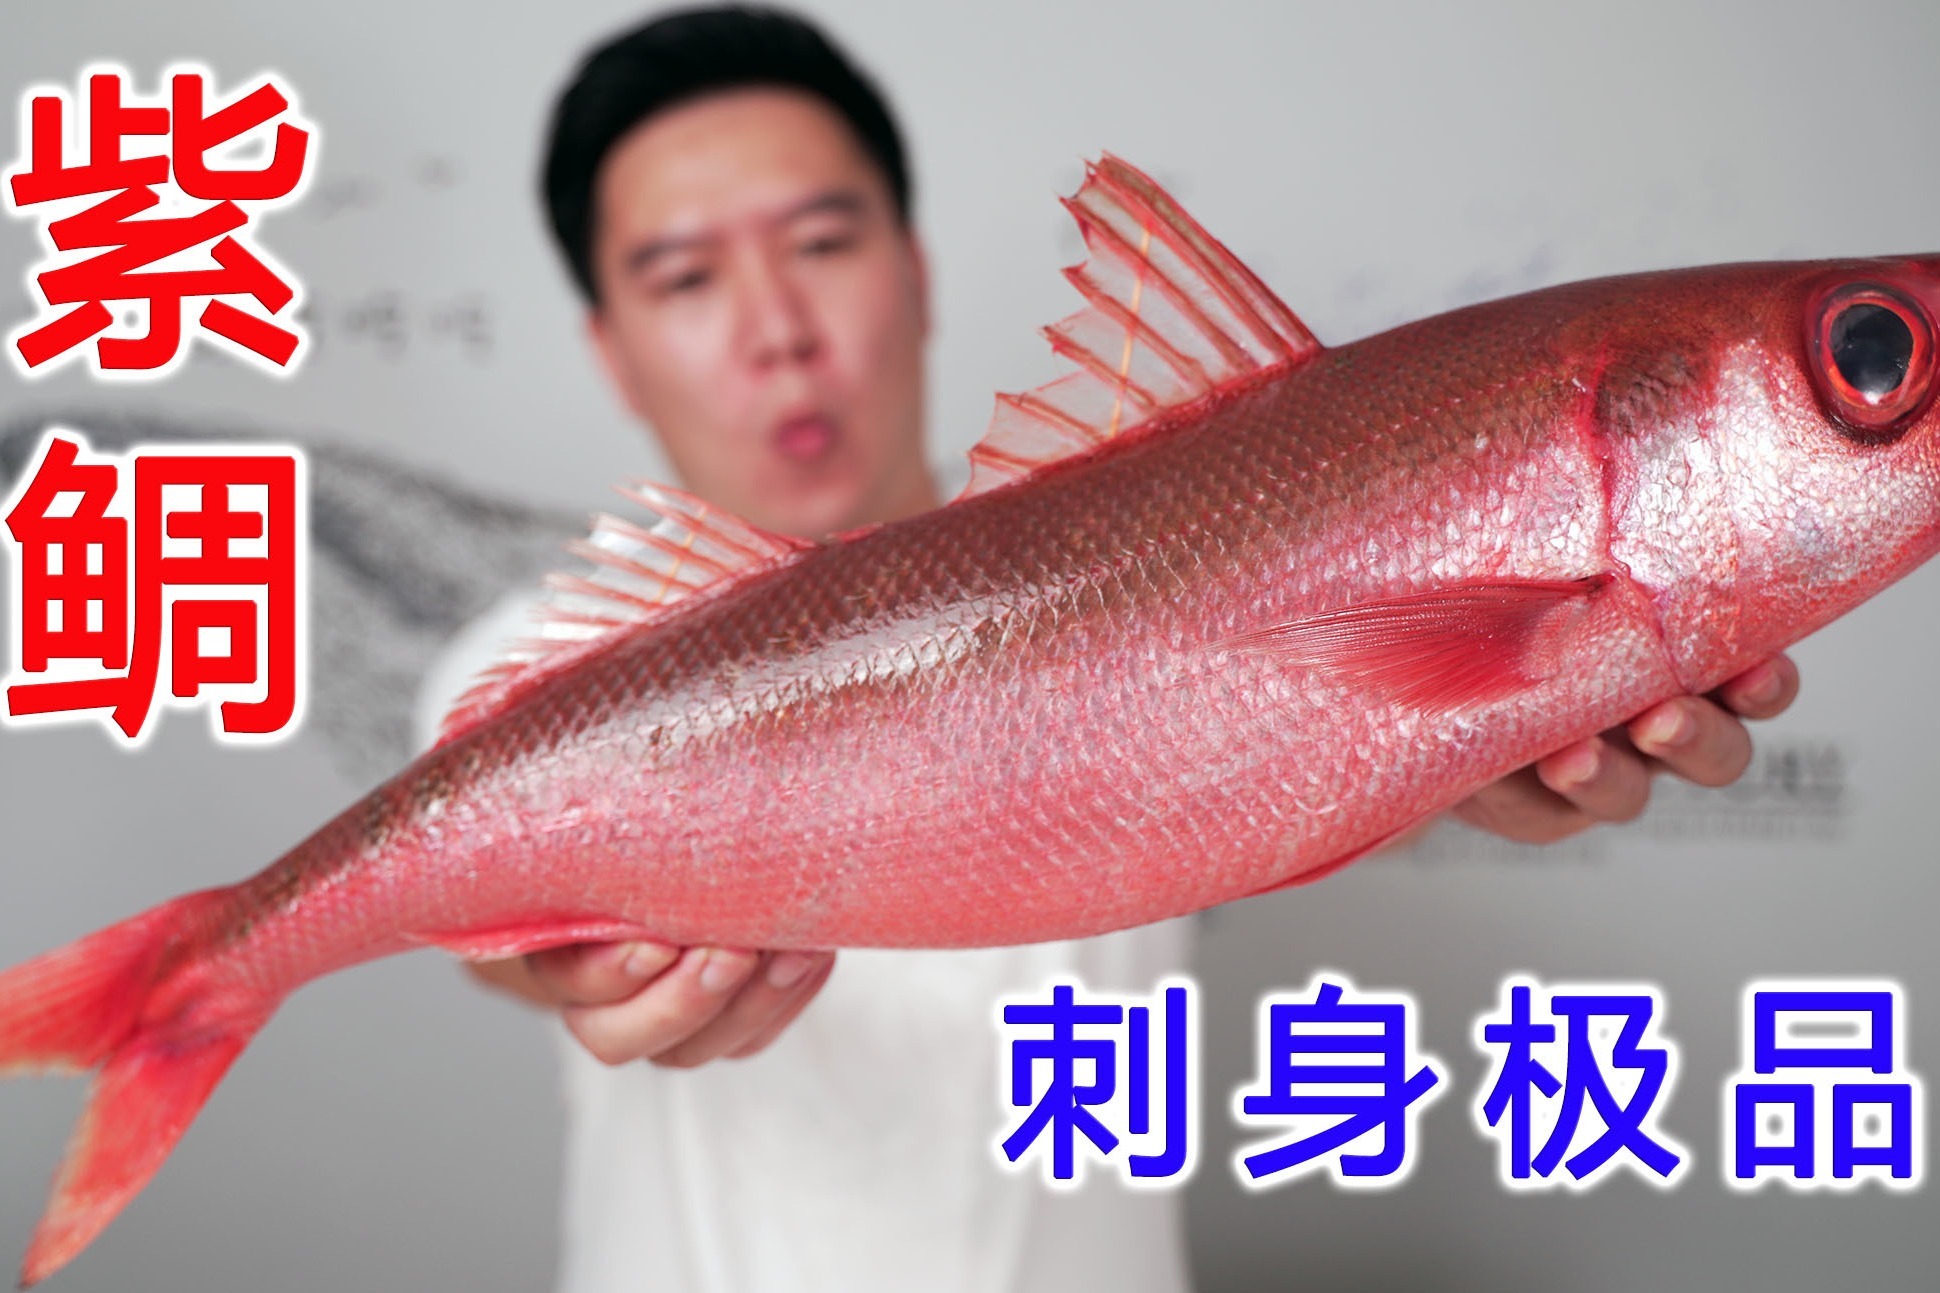 试吃一条红唇烈焰紫鲷鱼,刺身极品,口感幼嫩